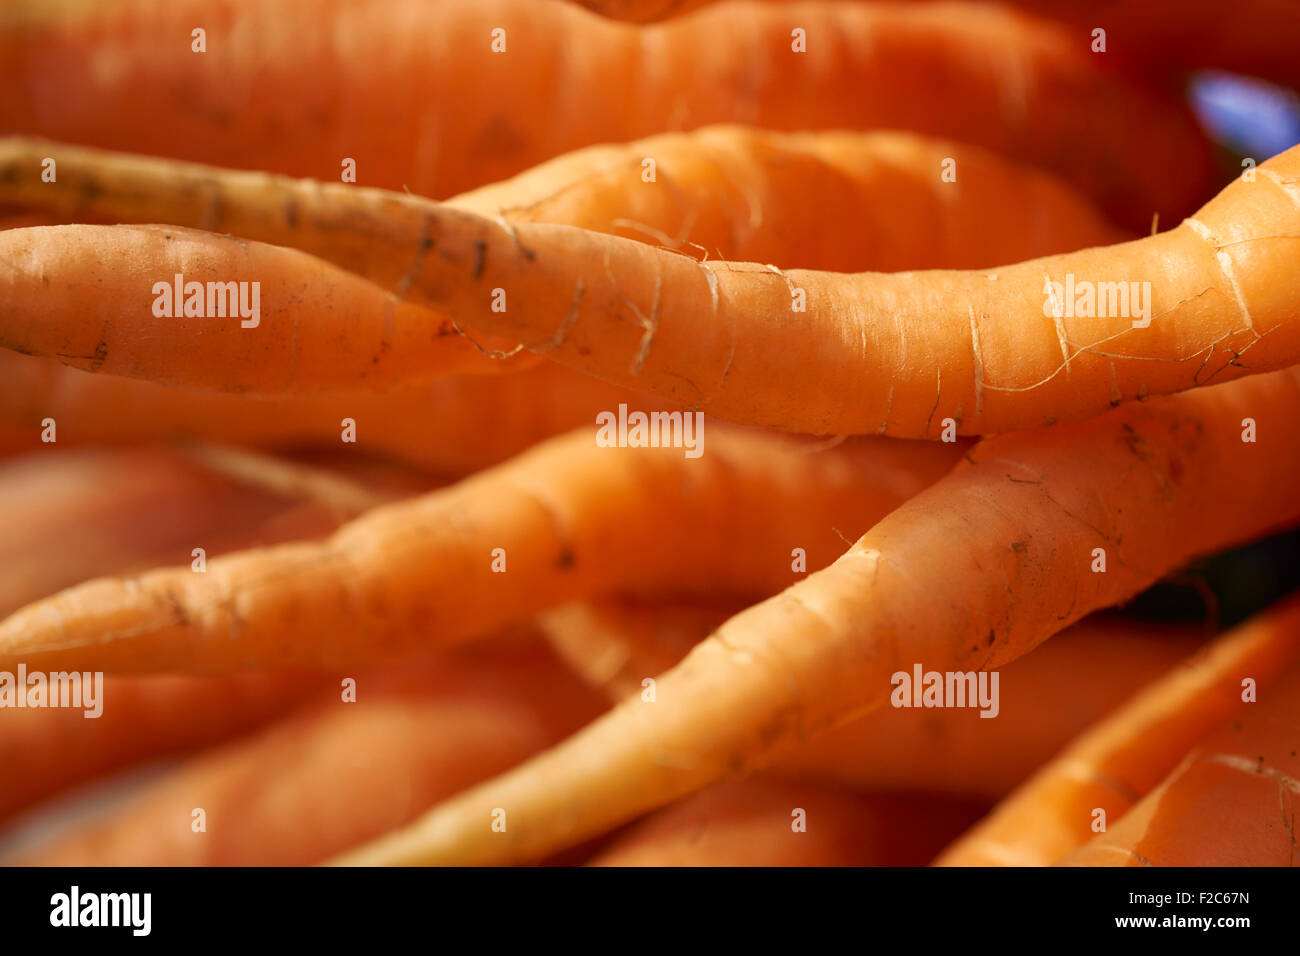 Cataste di carote fresche presso la Union Square Greenmarket, NYC, STATI UNITI D'AMERICA Foto Stock